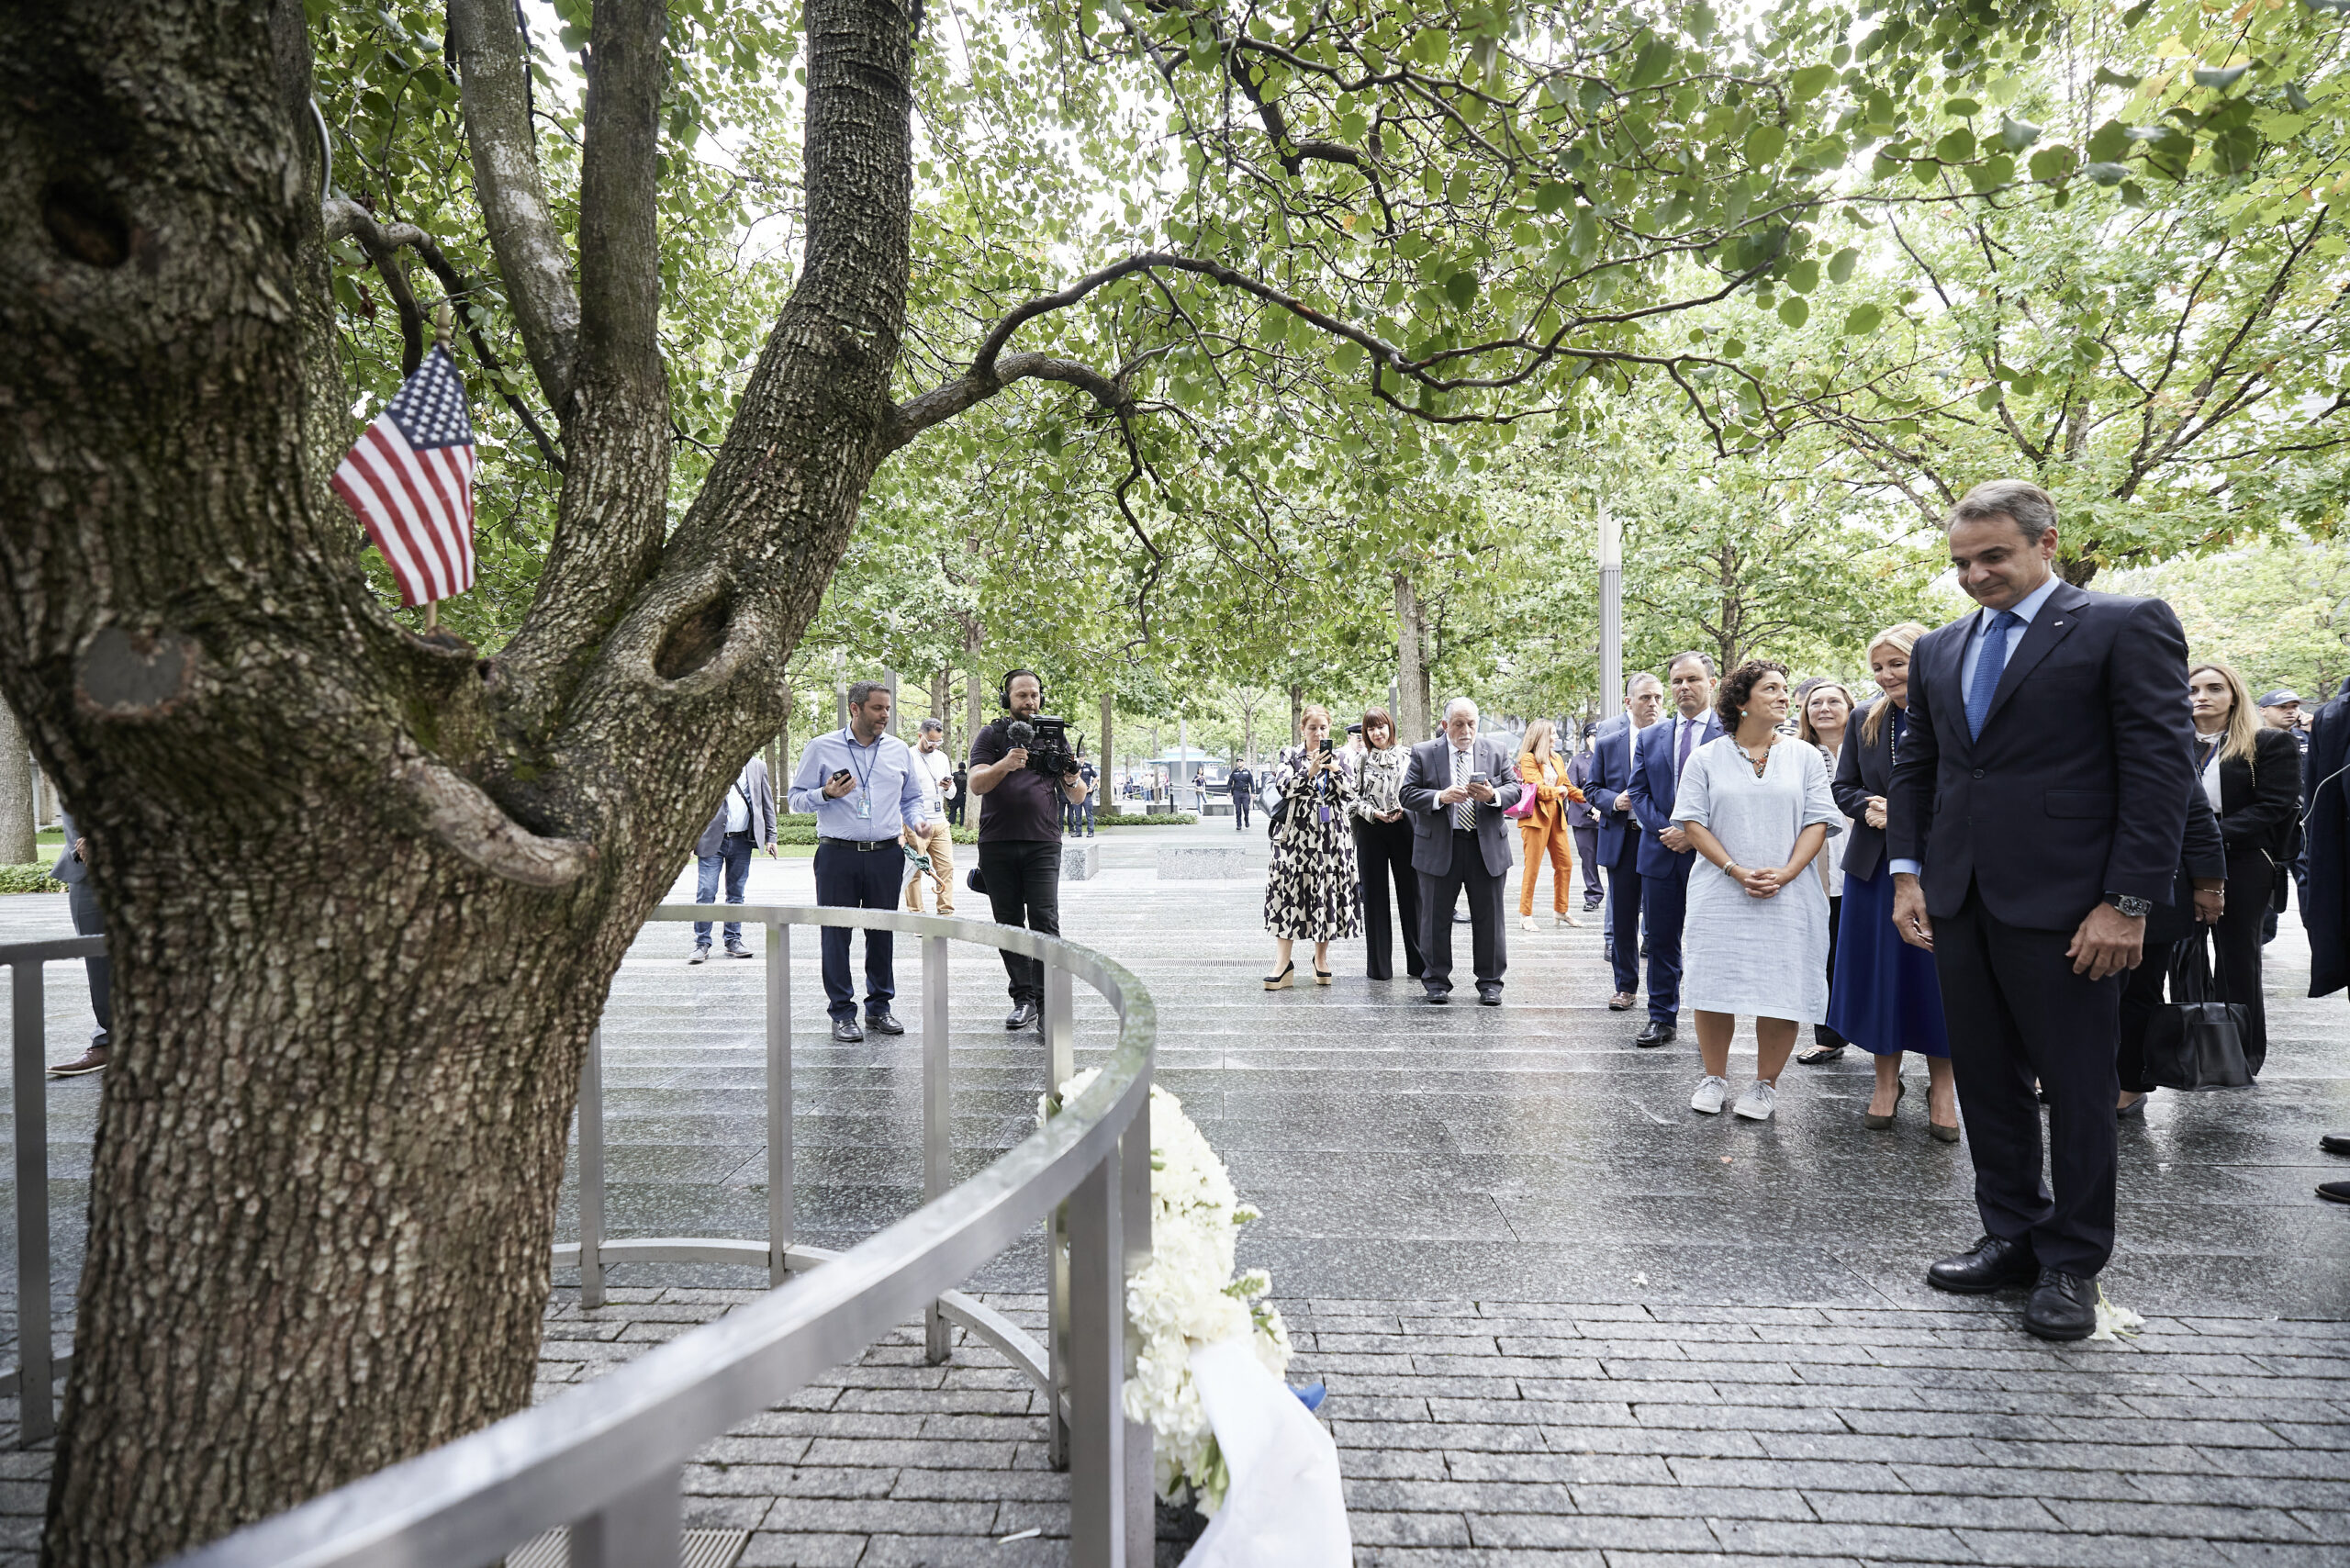 Επίσκεψη του πρωθυπουργού Κ. Μητσοτάκη στο ground zero και στον Ιερό Ναό του Αγίου Νικολάου στη Νέα Υόρκη